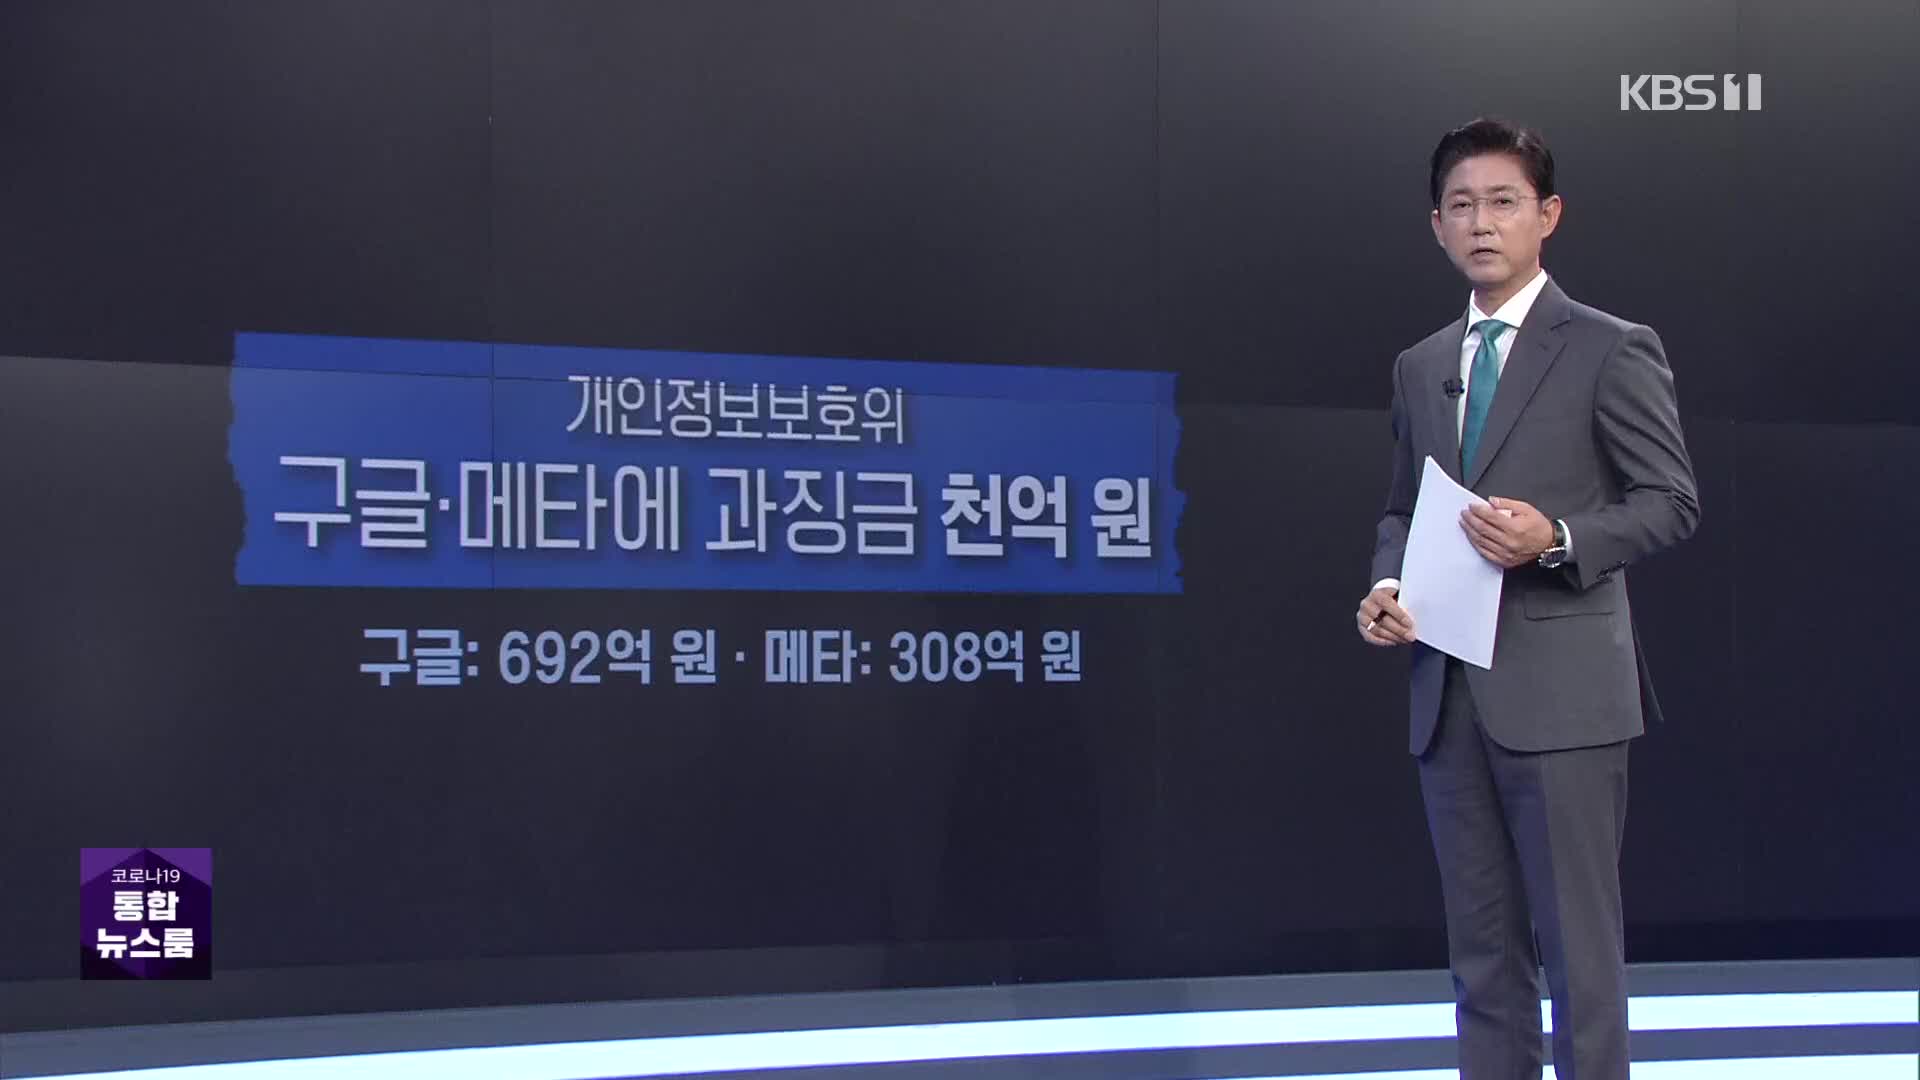 ‘개인정보 불법 수집’ 구글·메타 과징금 천억 원